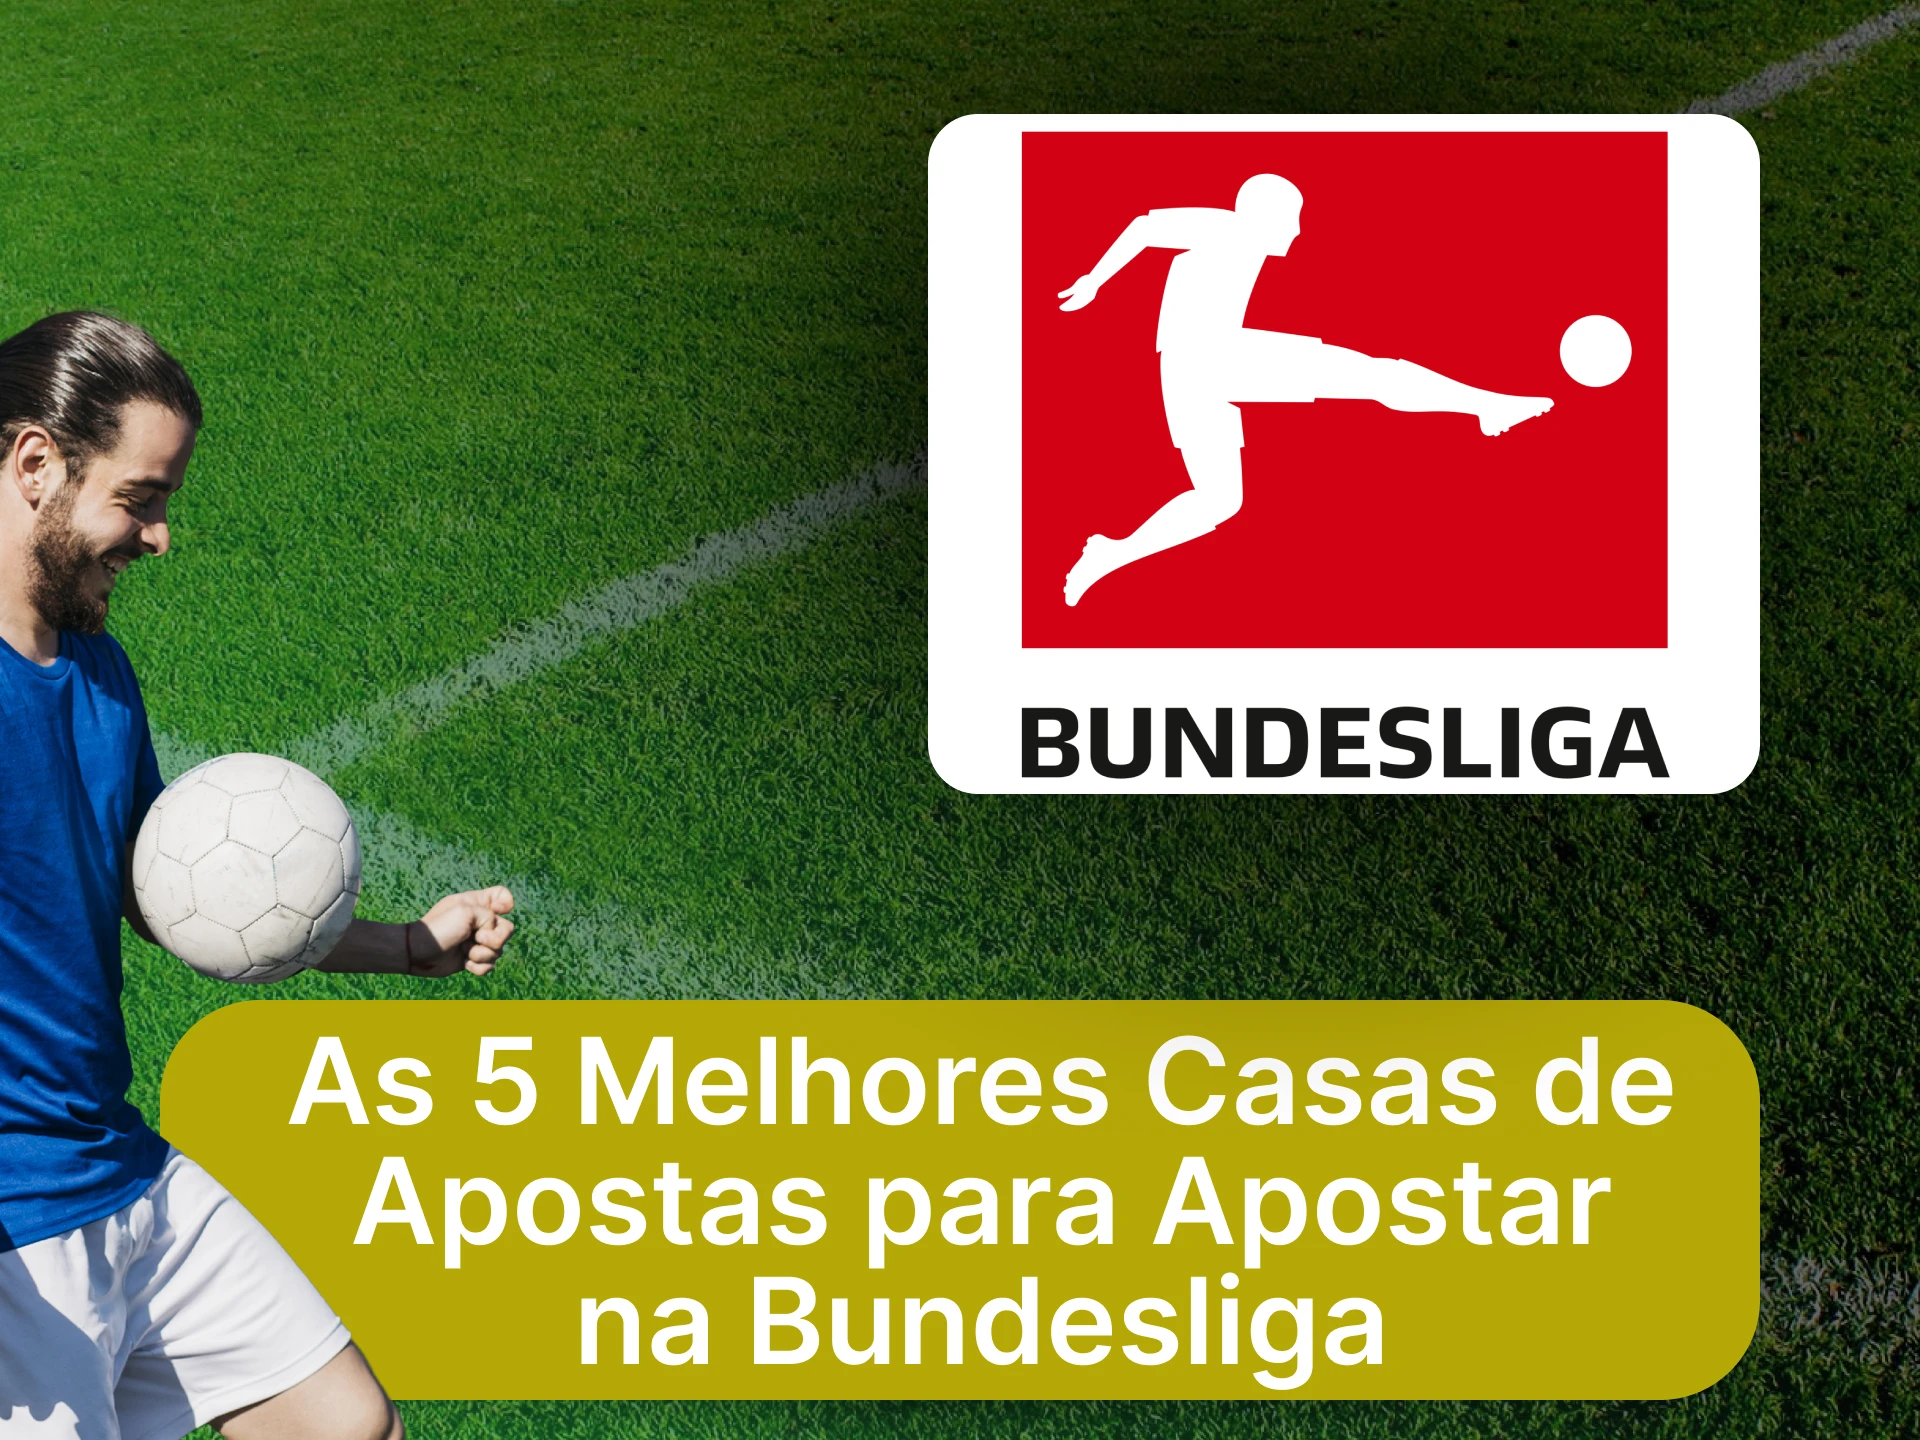 Confira os melhores sites de apostas da Bundesliga.